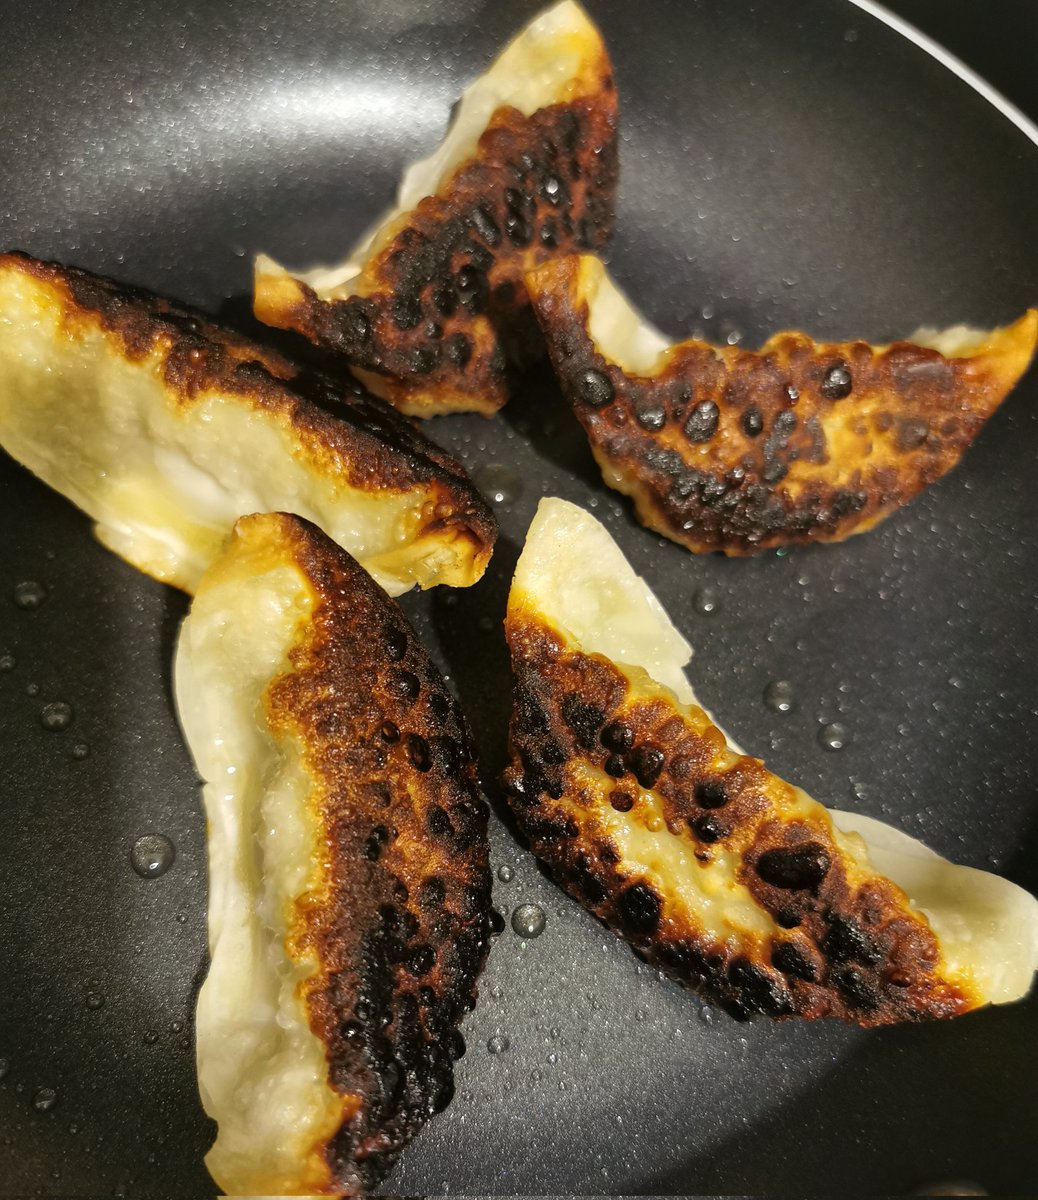 I burnt my dinner 😢